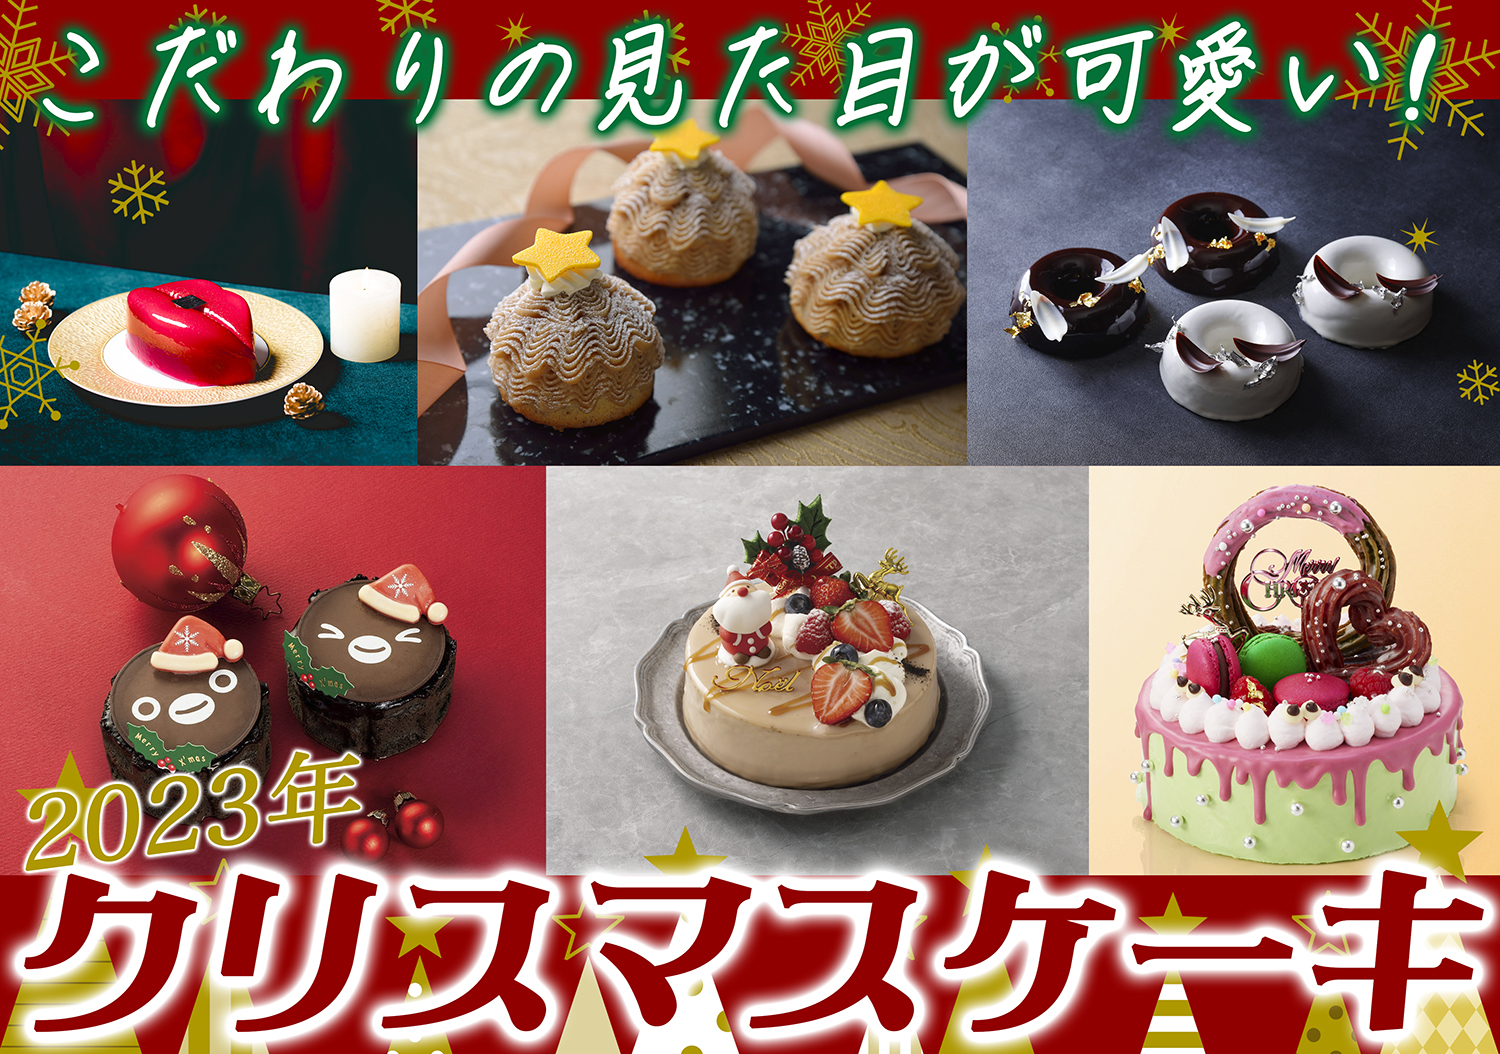 クリスマスホールケーキぼくのスマイル - おもちゃ/人形